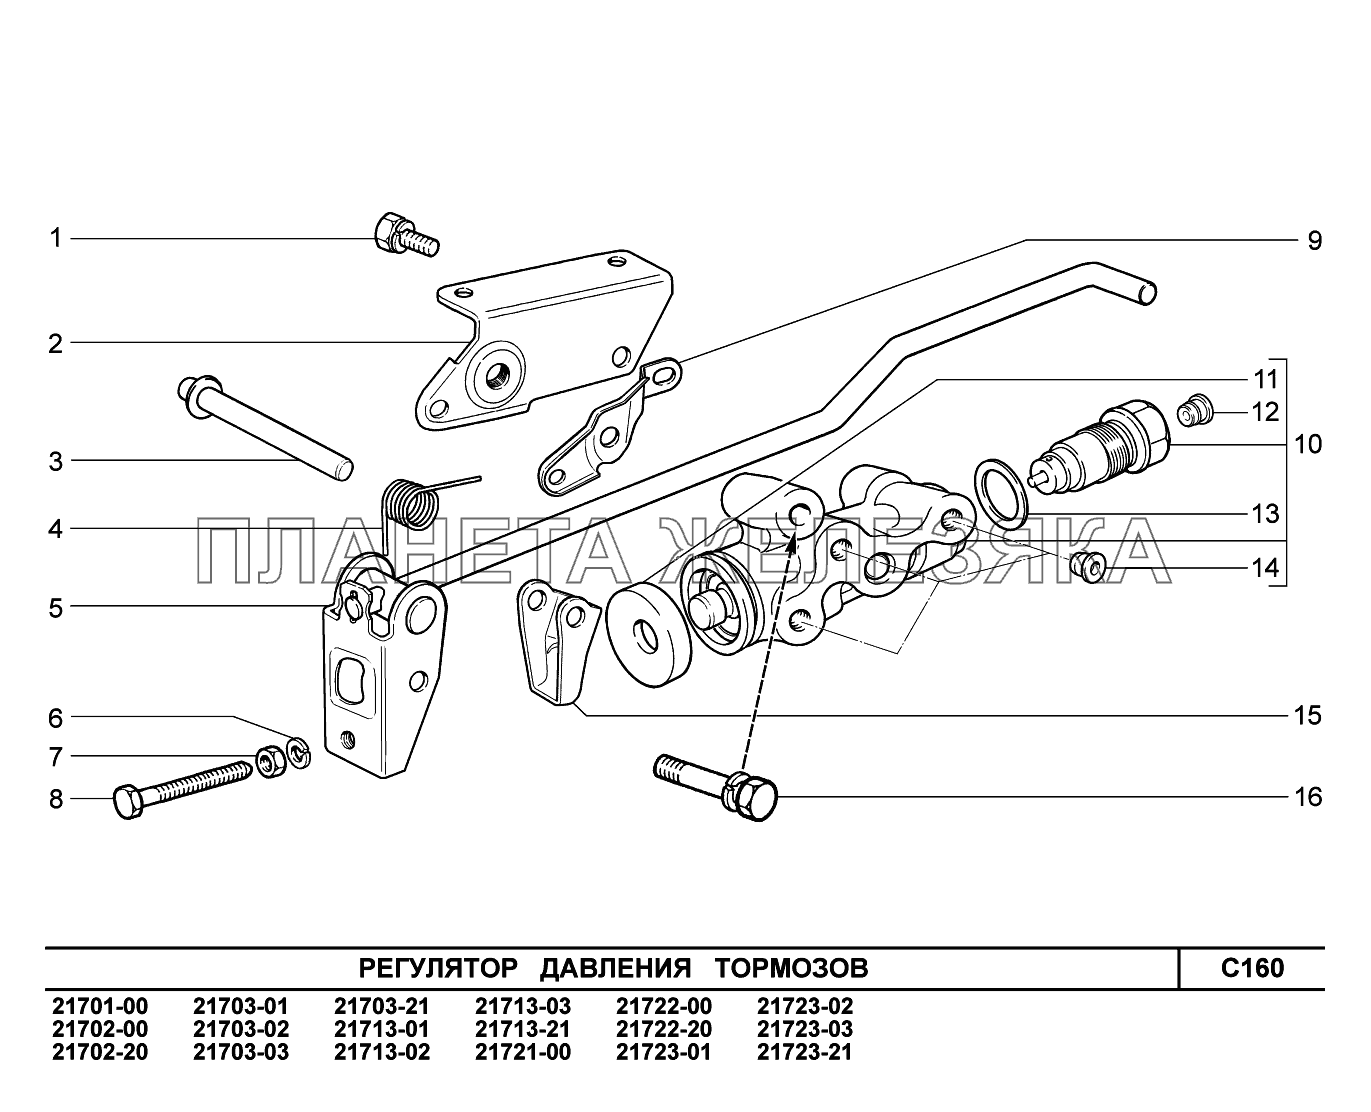 C160. Регулятор давления тормозов ВАЗ-2170 